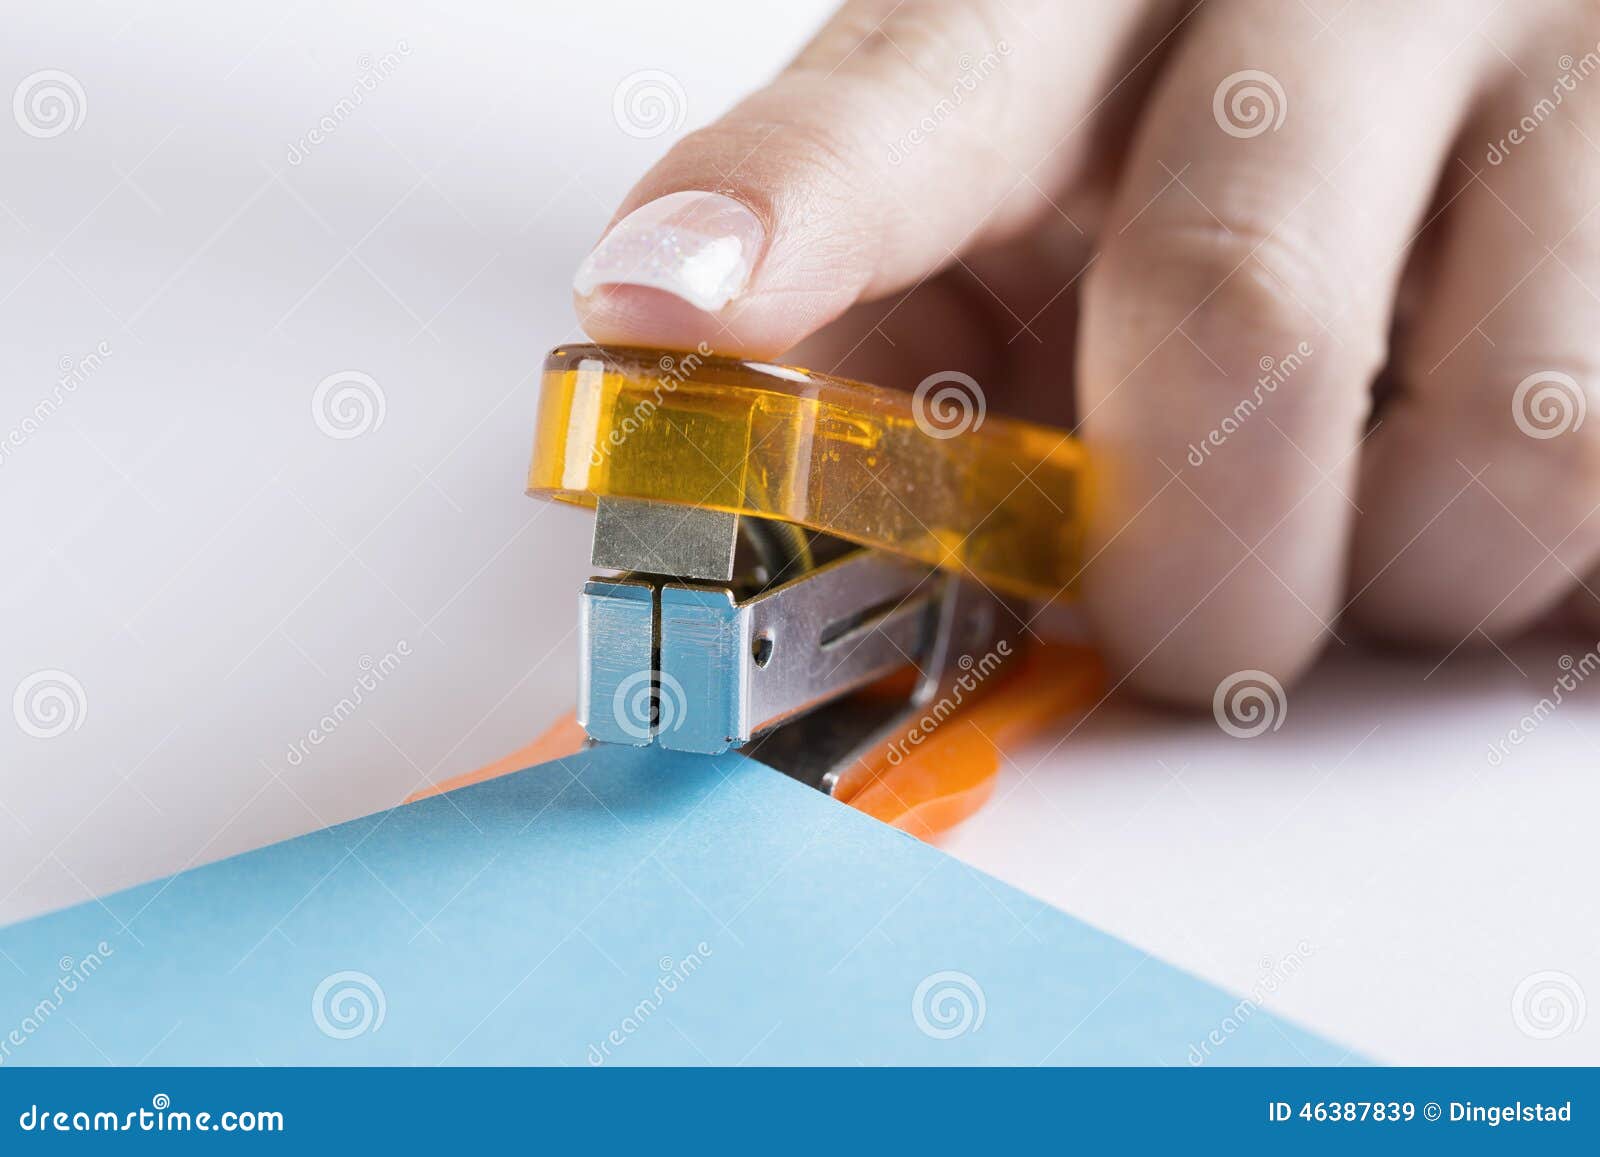 office stapler ready to staple paper